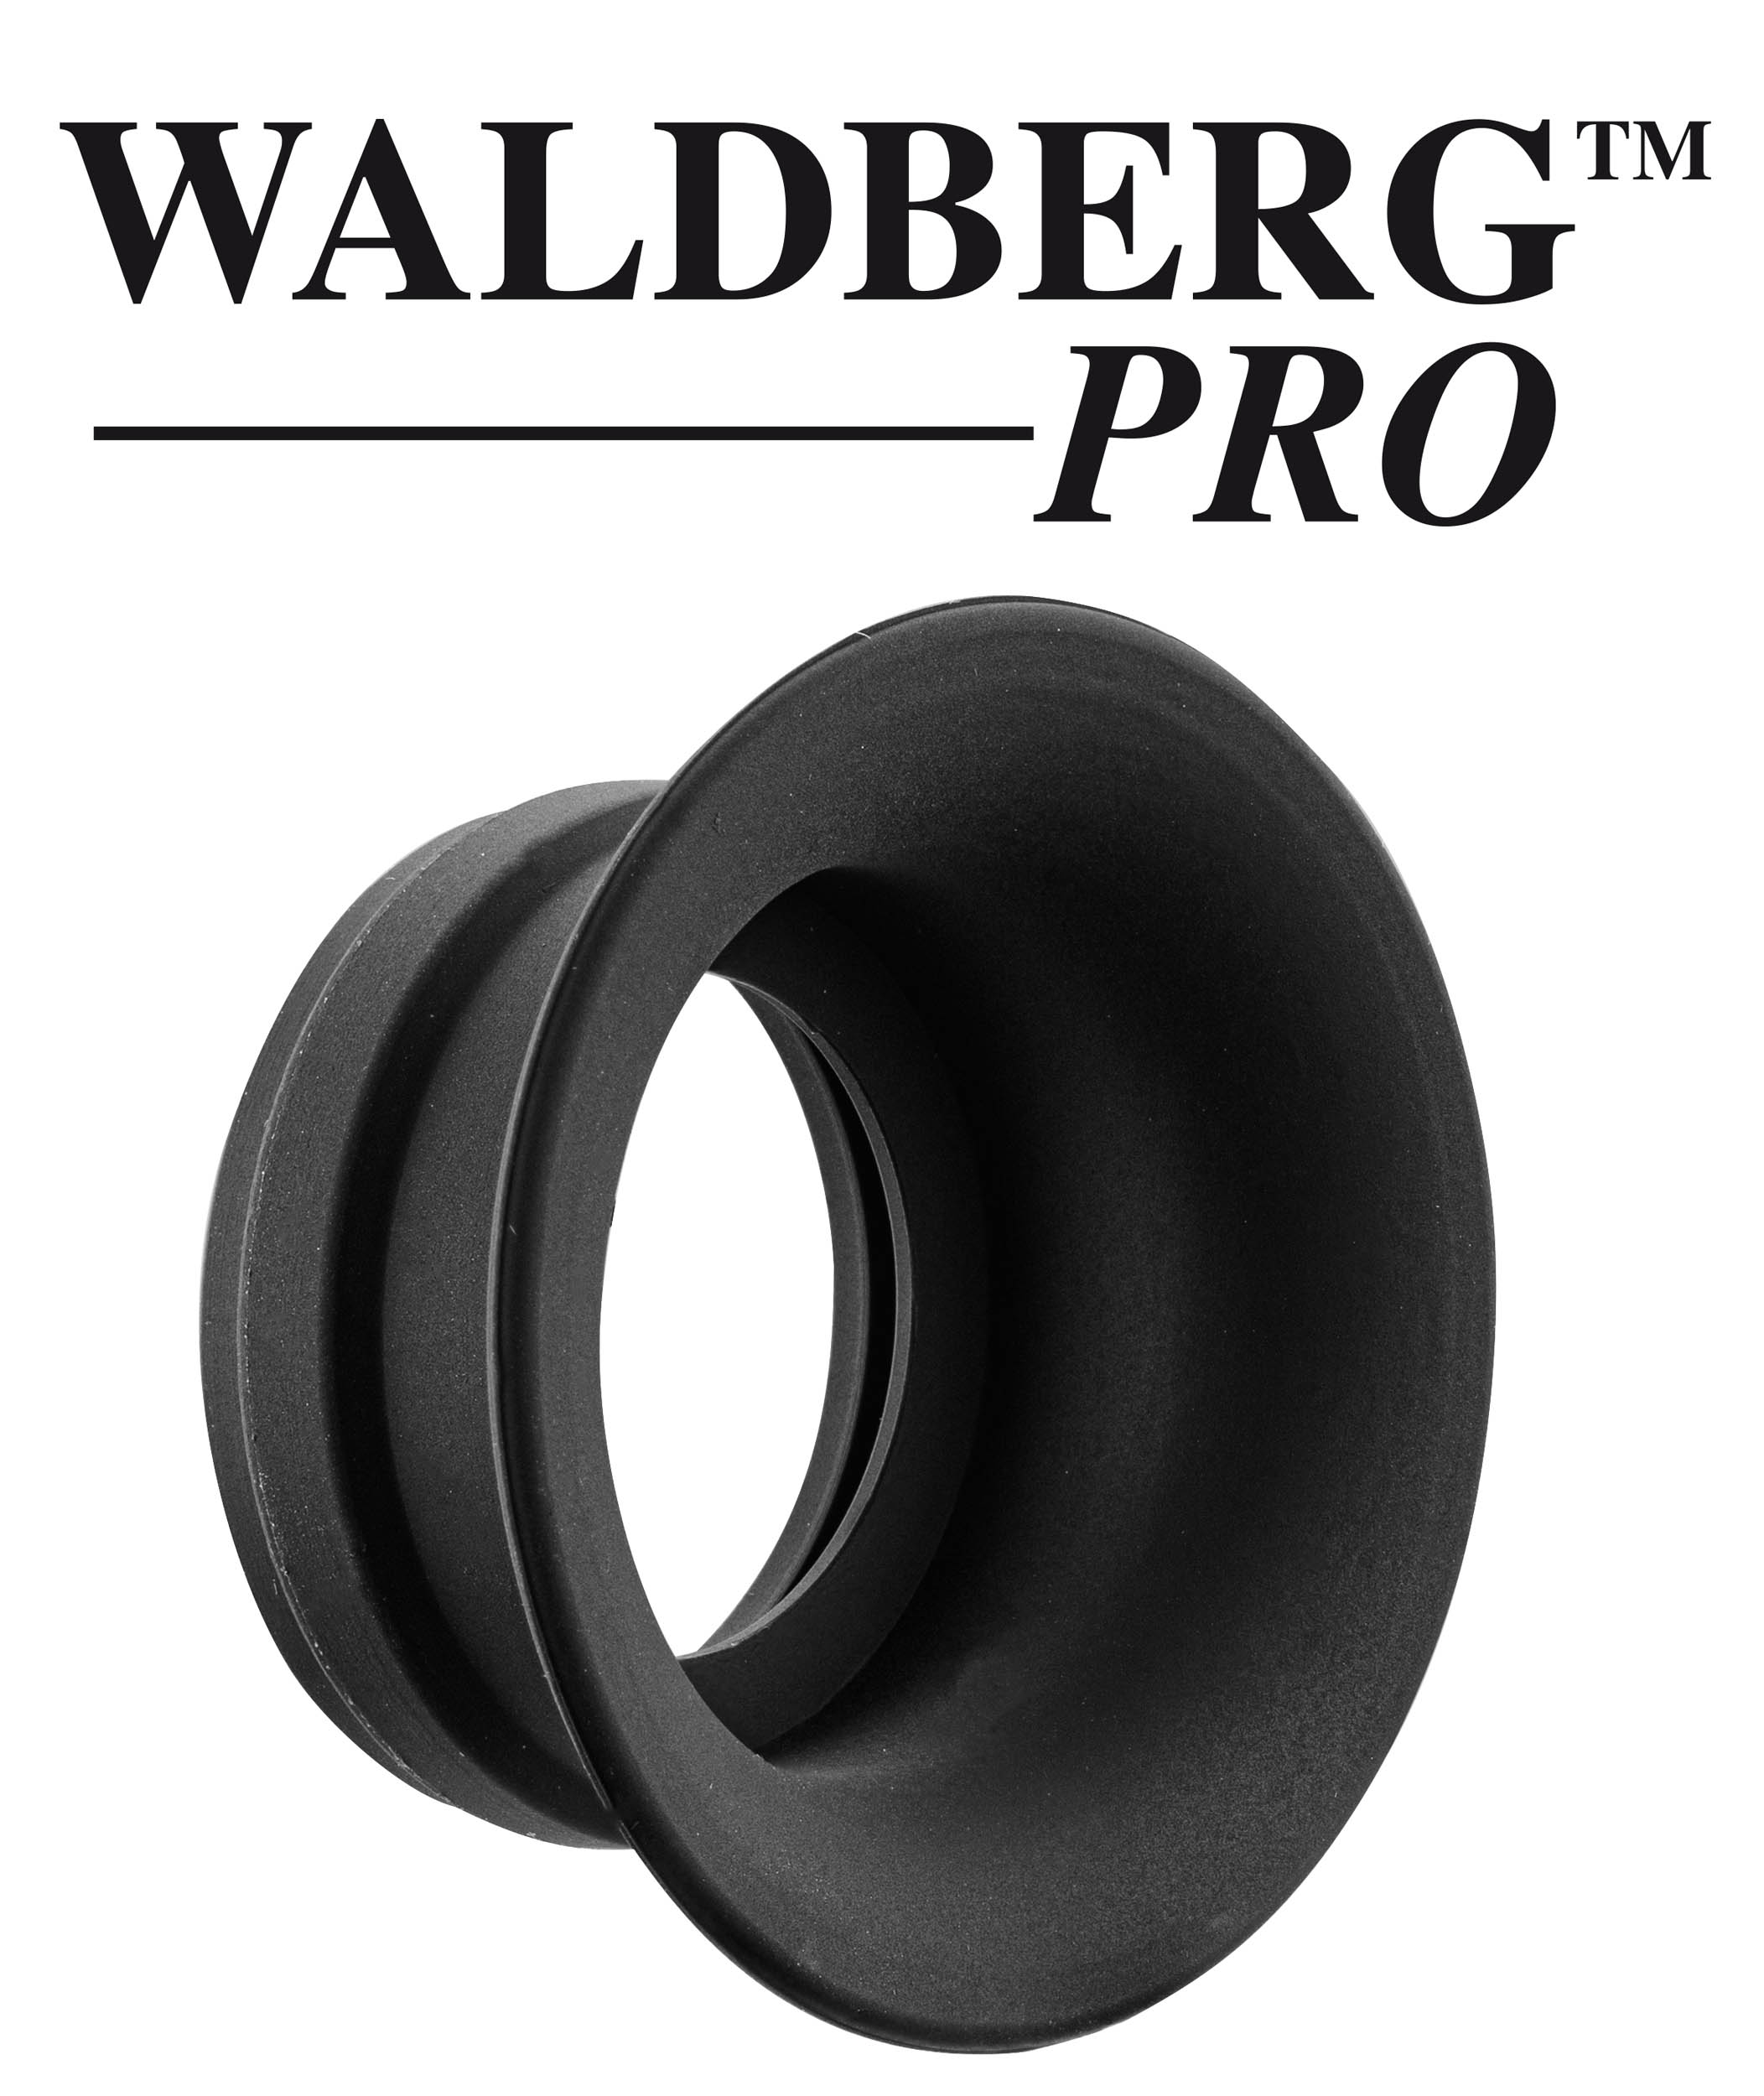 Waldberg Pro - Bonnette pour demi-jumelle